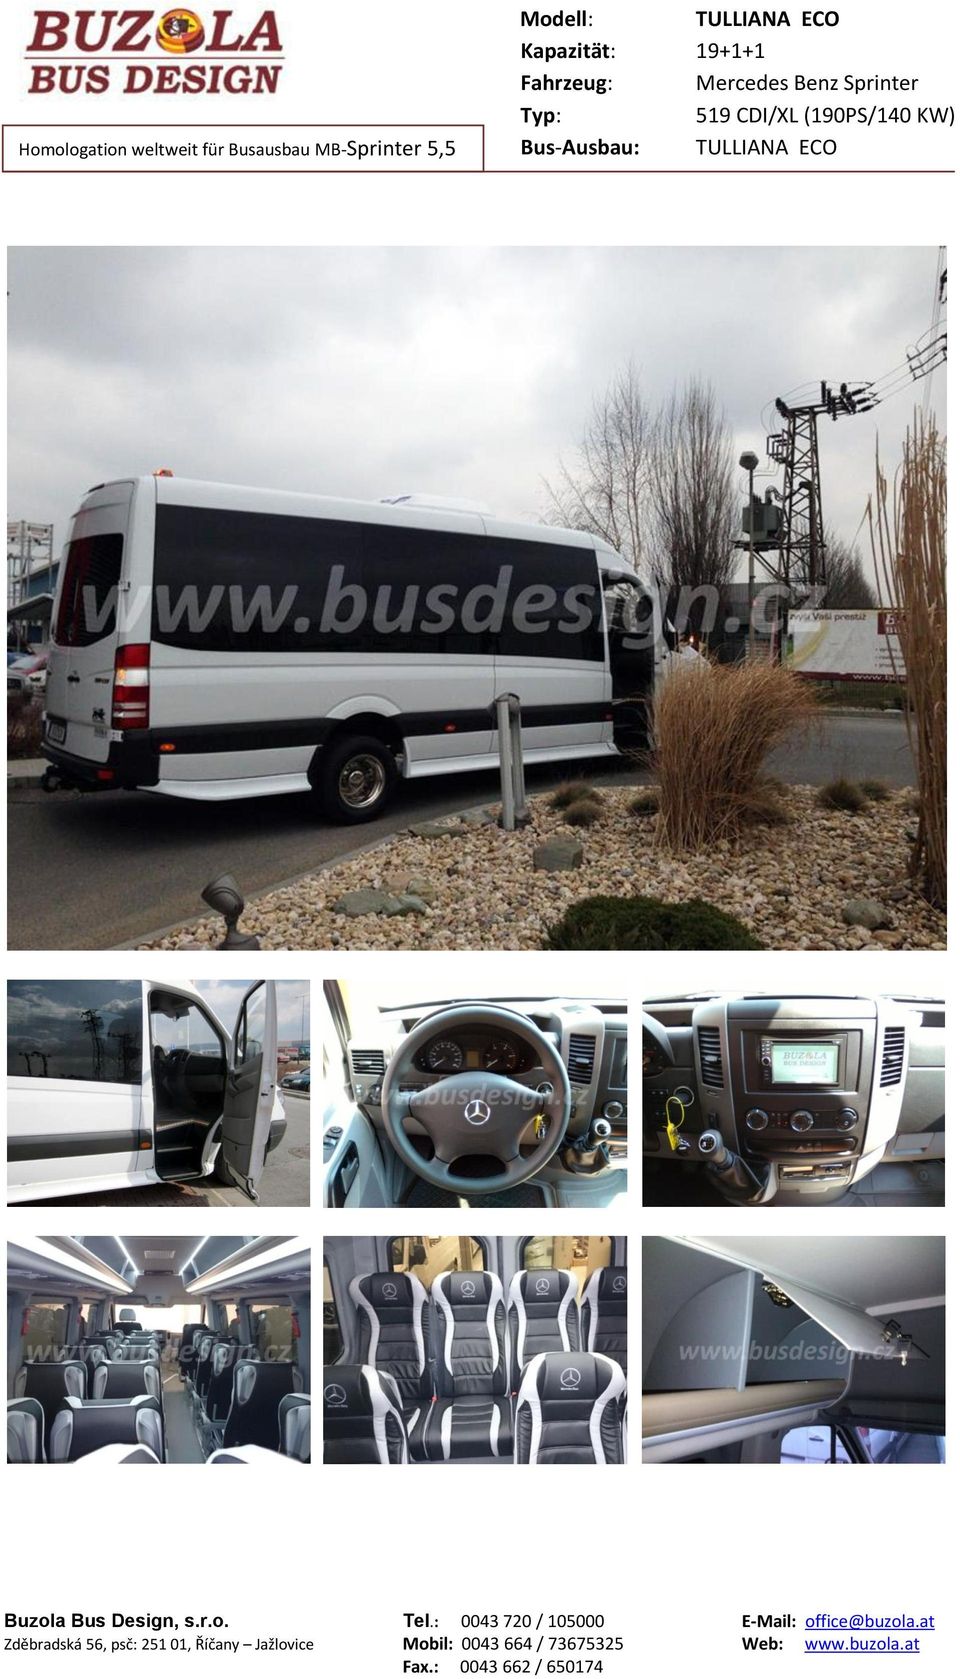 Buzola Bus Design, s.r.o. Tel.: 0043 720 / 05000 E-Mail: office@buzola.